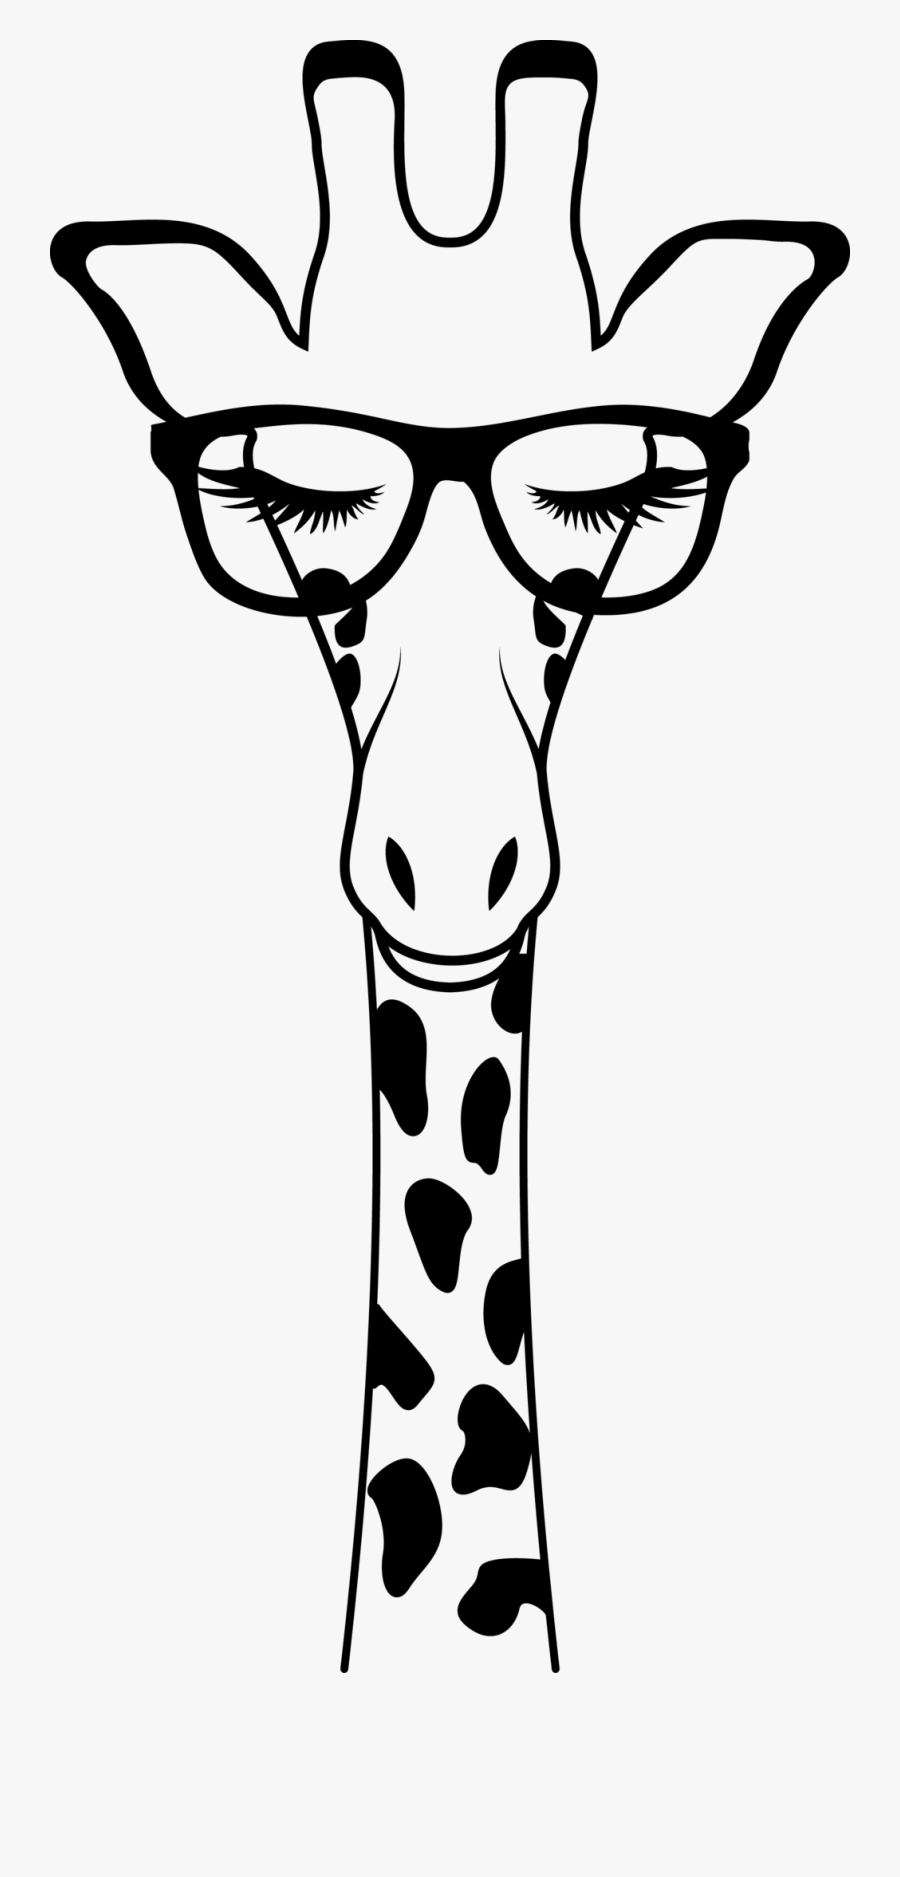 Giraffe Svg Free, Transparent Clipart